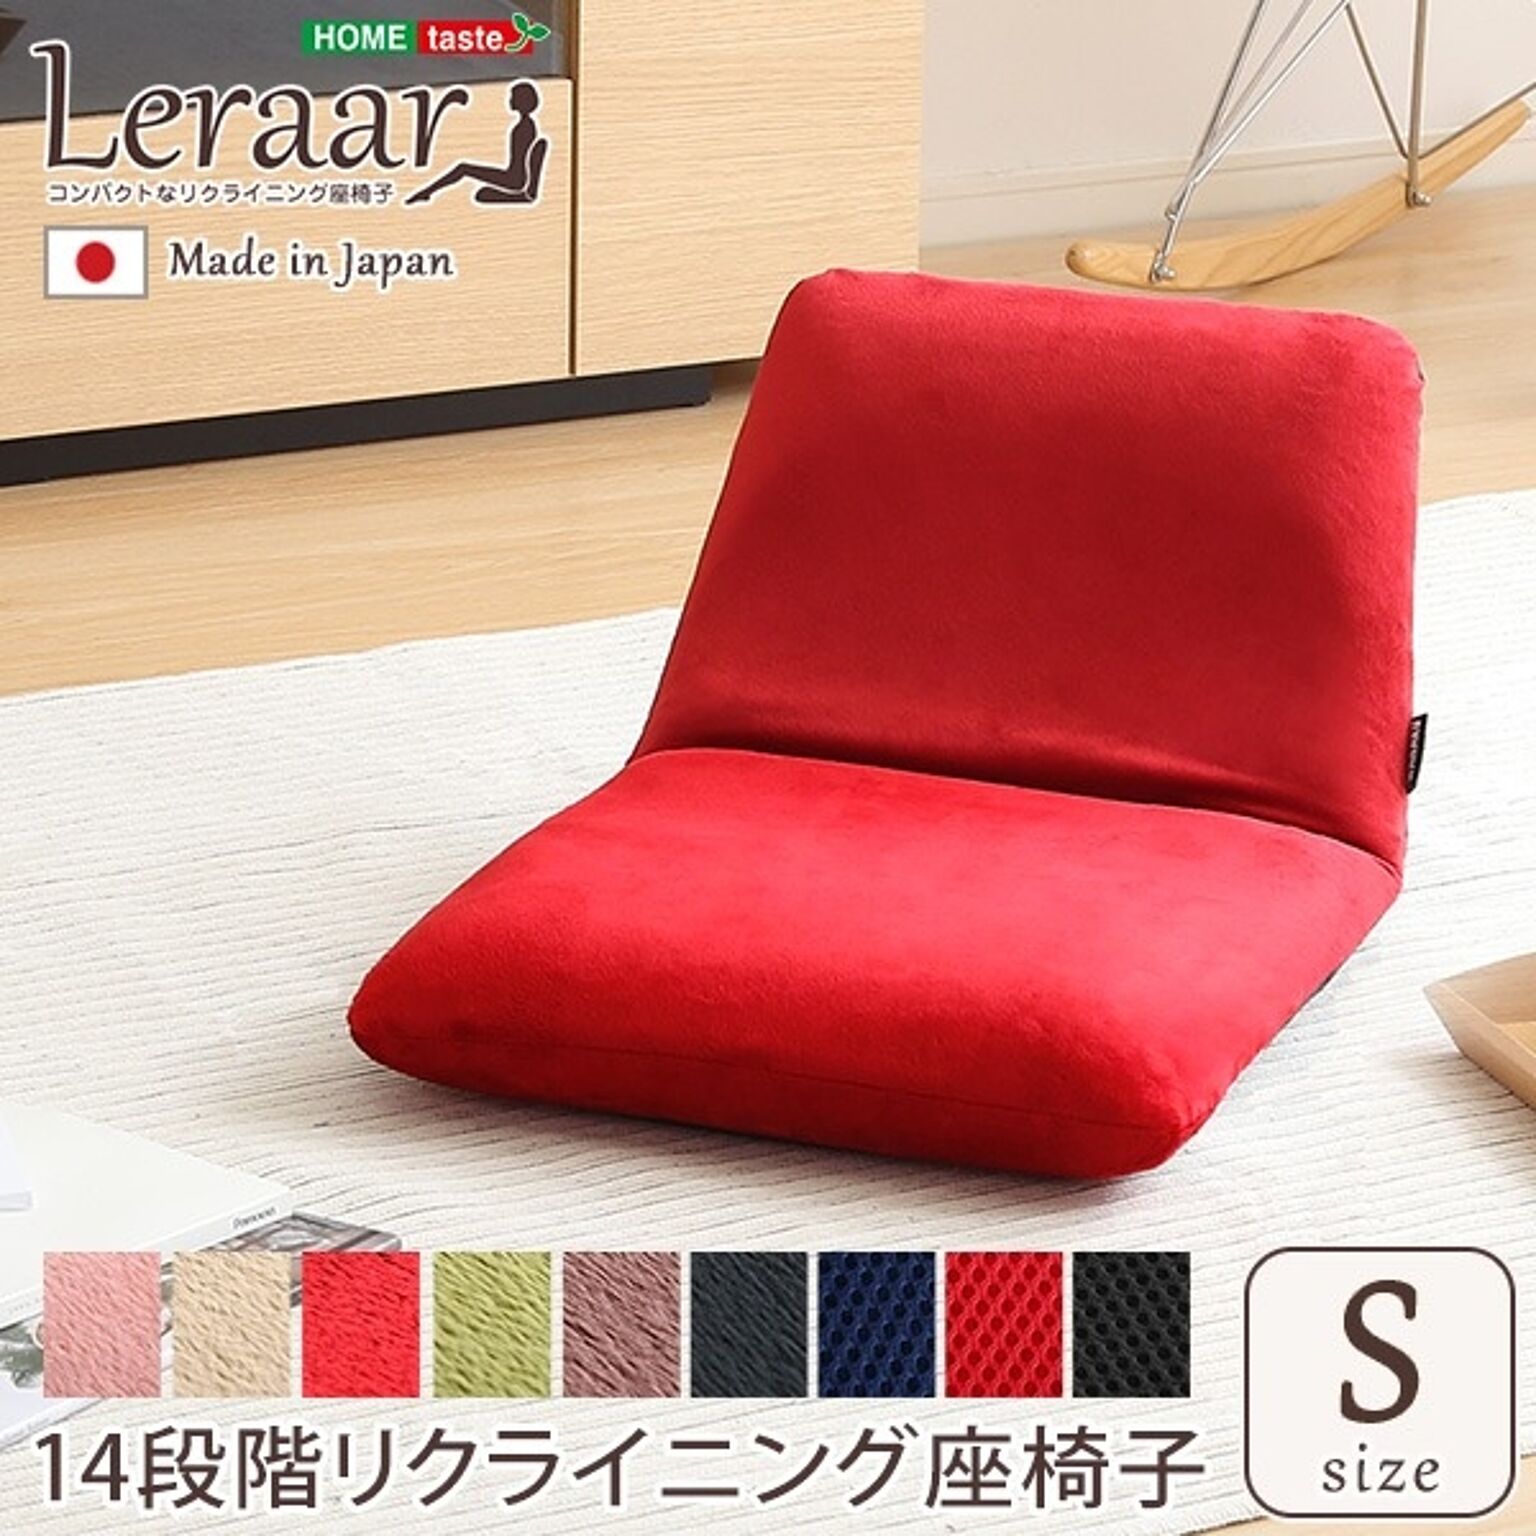 リクライニング式 座椅子/フロアチェア 【Sサイズ 起毛グリーン】 幅約43cm スチールパイプ ウレタン 日本製【代引不可】